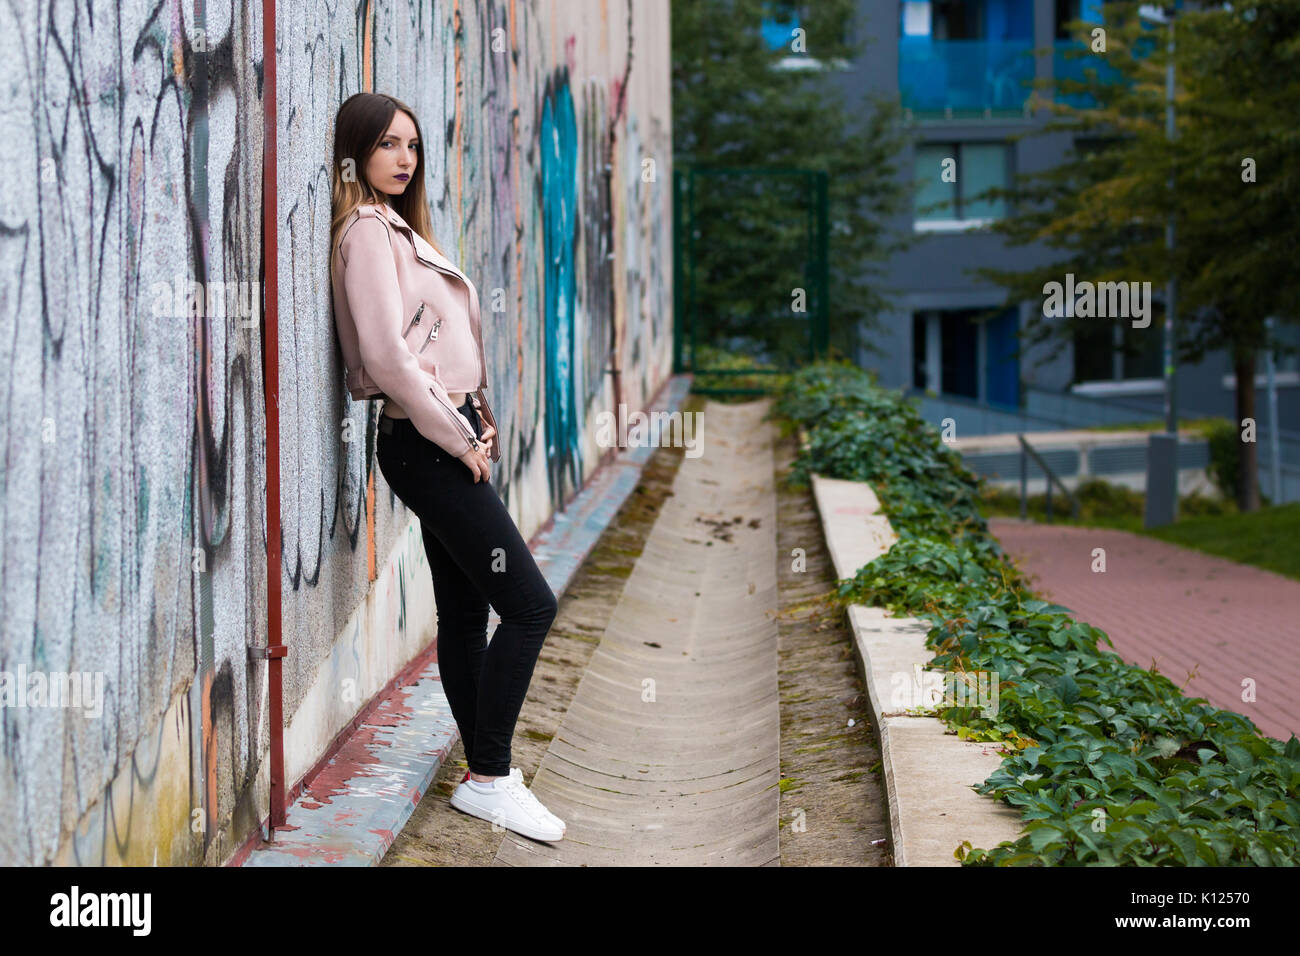 Portrait de jeune fille à la mode informel sur le graffiti wall background Banque D'Images